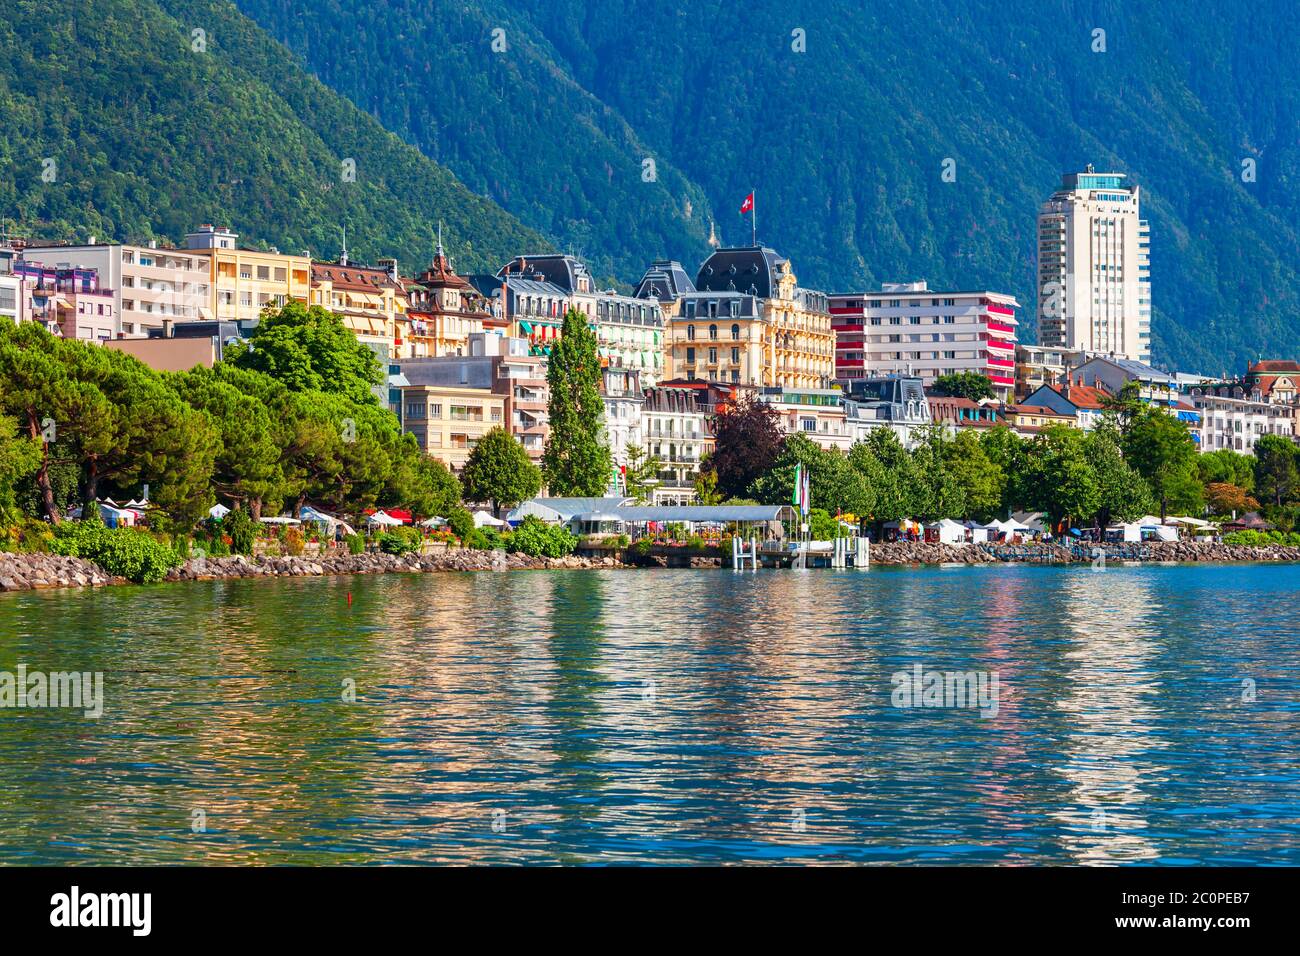 Montreux Hafen mit Yachten und Boote. Montreux ist eine Stadt am Genfer See, am Fuße der Alpen in der Schweiz Stockfoto